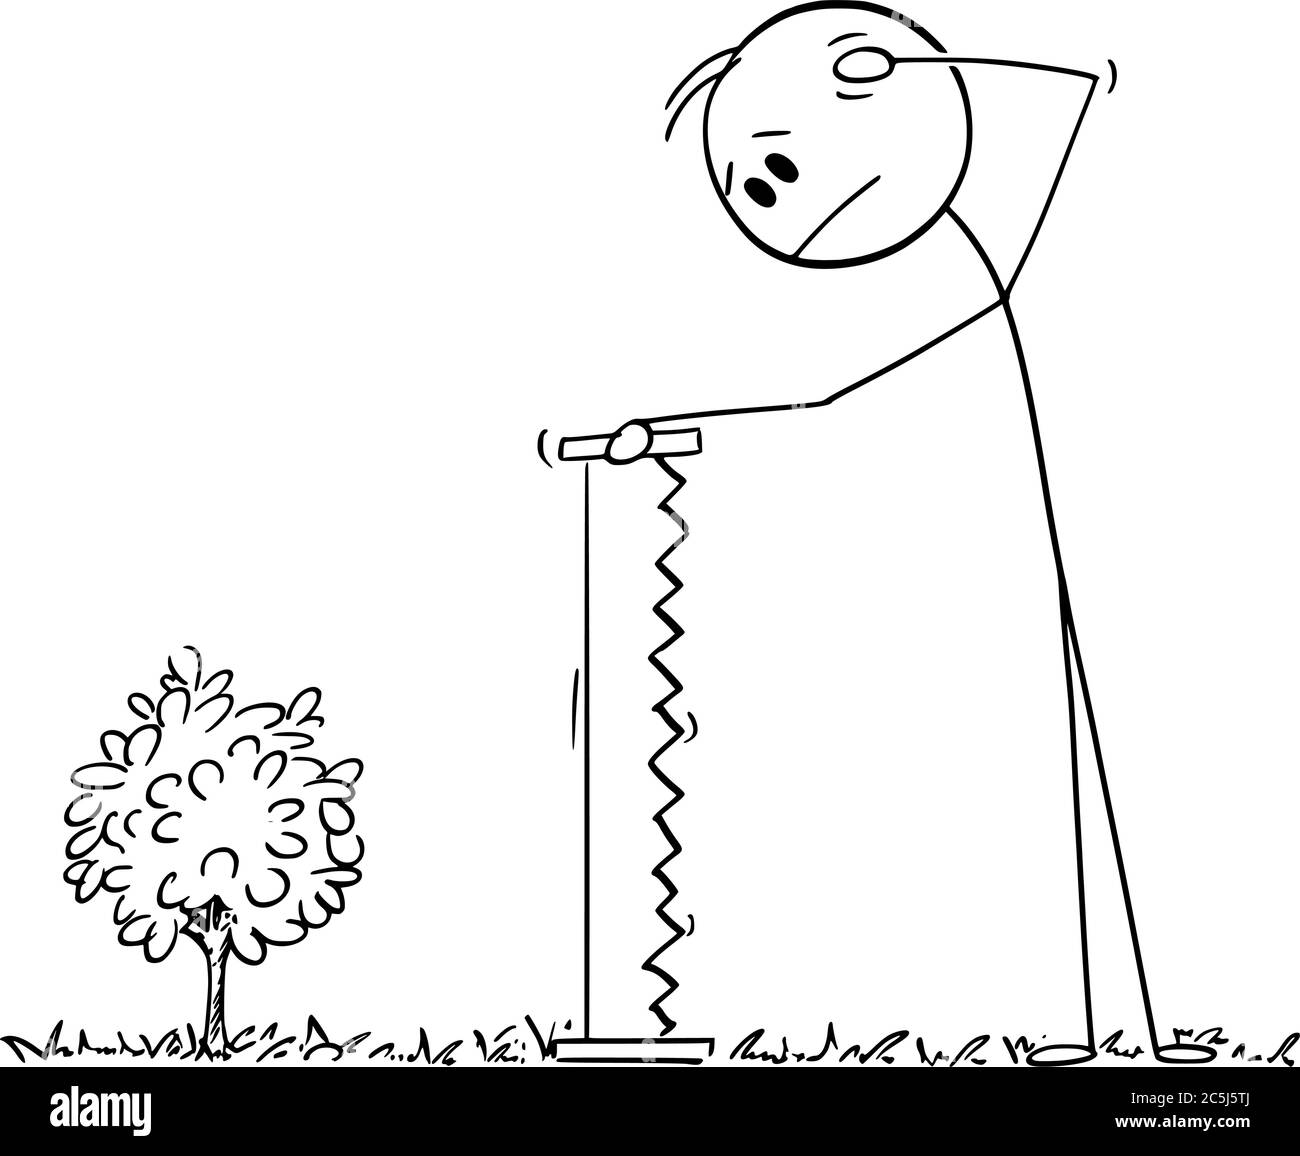 Vektor Cartoon Stick Figur Zeichnung konzeptionelle Illustration von ratlos Mann mit großer Hand Säge Blick auf kleine junge Pflanze Baum, zu klein, um für Brennholz geschnitten werden. Stock Vektor